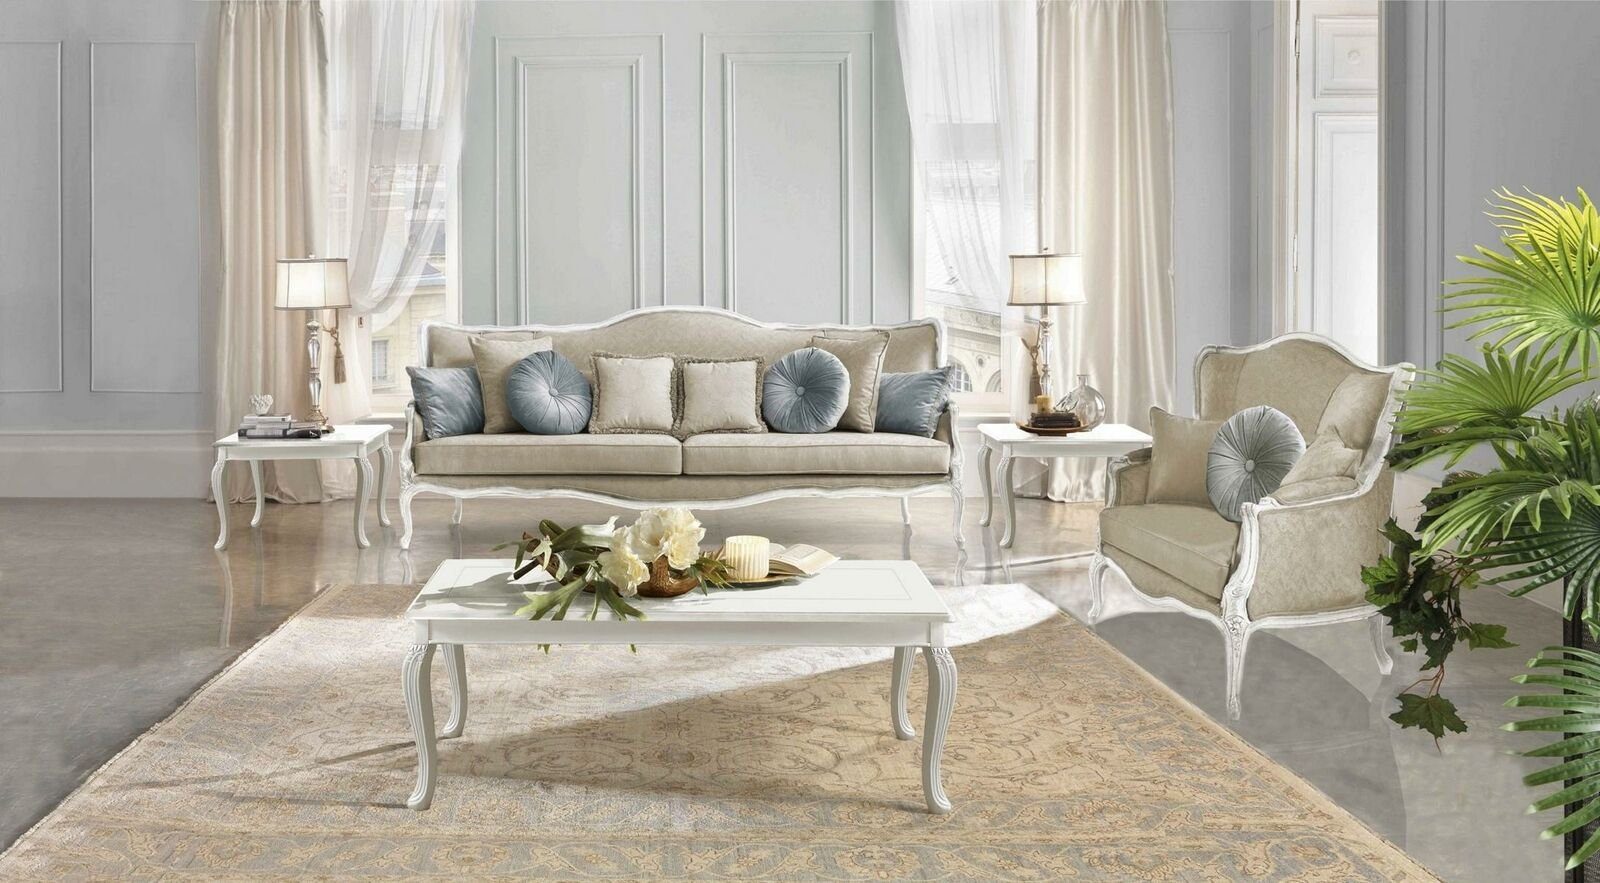 JVmoebel Sofa Italienische Möbel 3 in Europe Sitzer Stoff, Klassische Barock Rokoko Sofa Made Textil